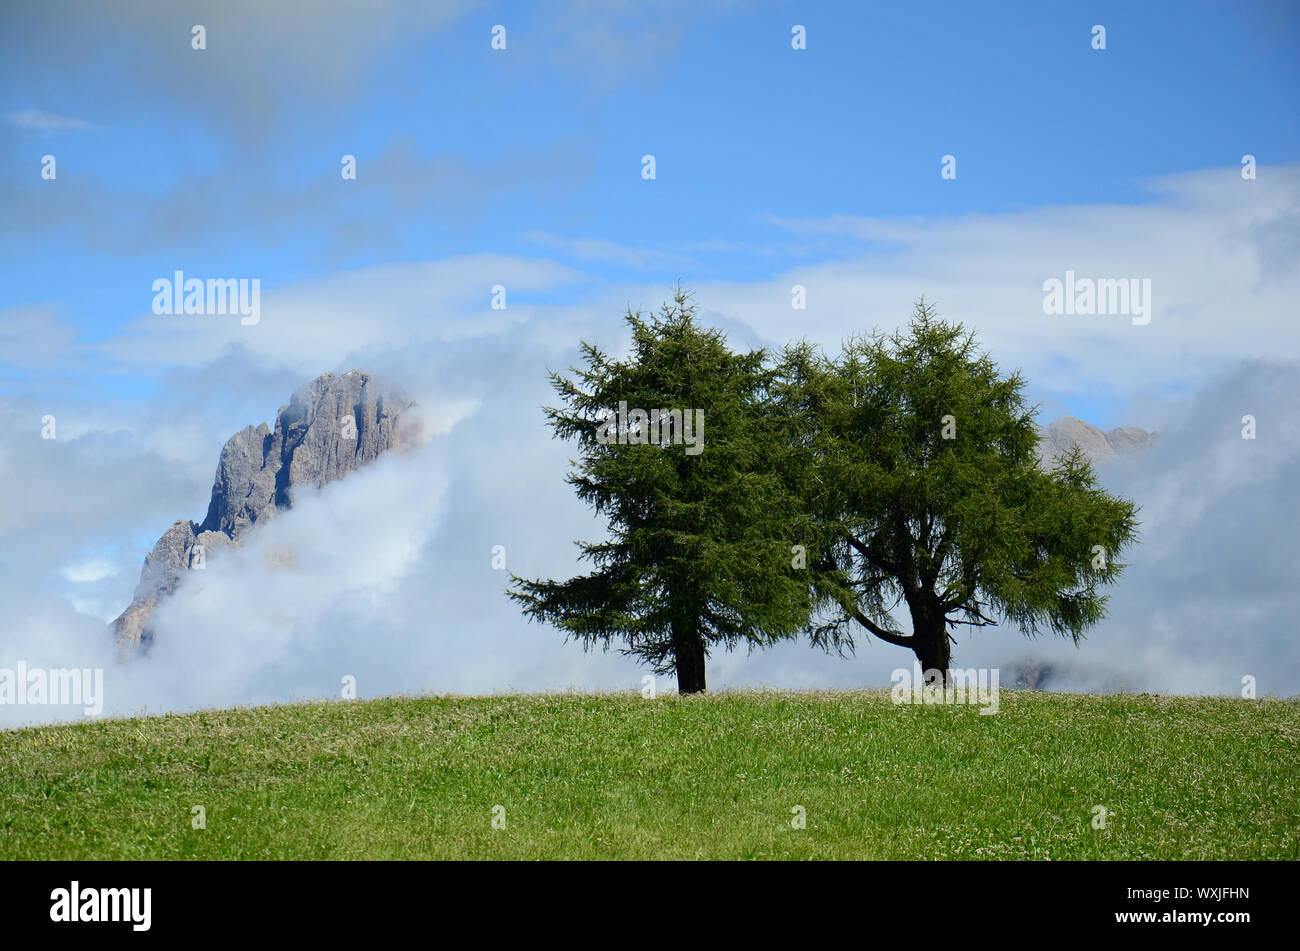 Vista panorámica de los árboles solitarios en la niebla de la mañana con picos de montañas en el fondo. Parco naturale Gruppo di Tessa. Italia Foto de stock